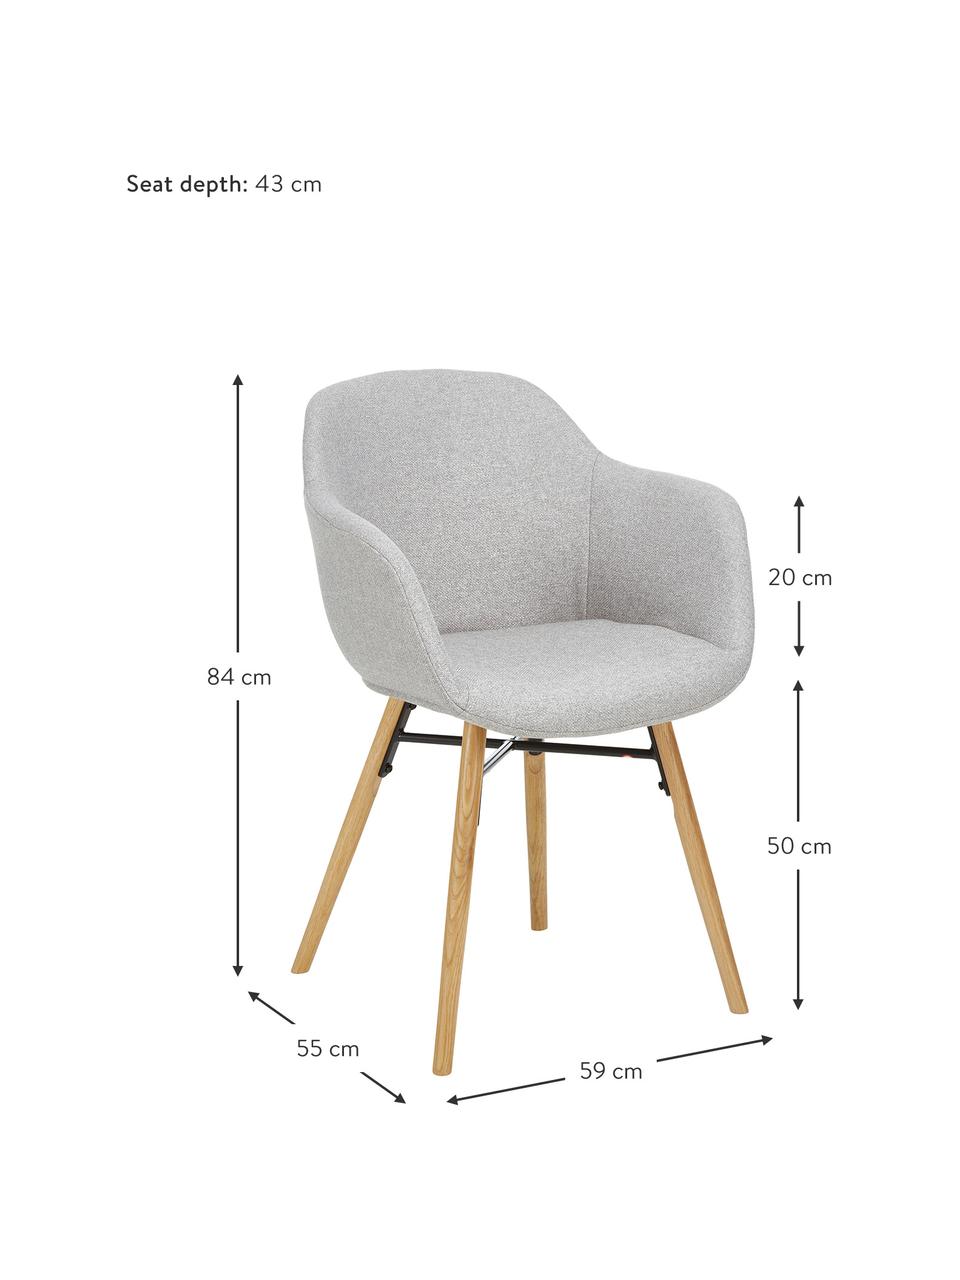 Petite chaise scandinave gris clair Fiji, Tissu gris clair, bois de chêne, larg. 59 x prof. 55 cm